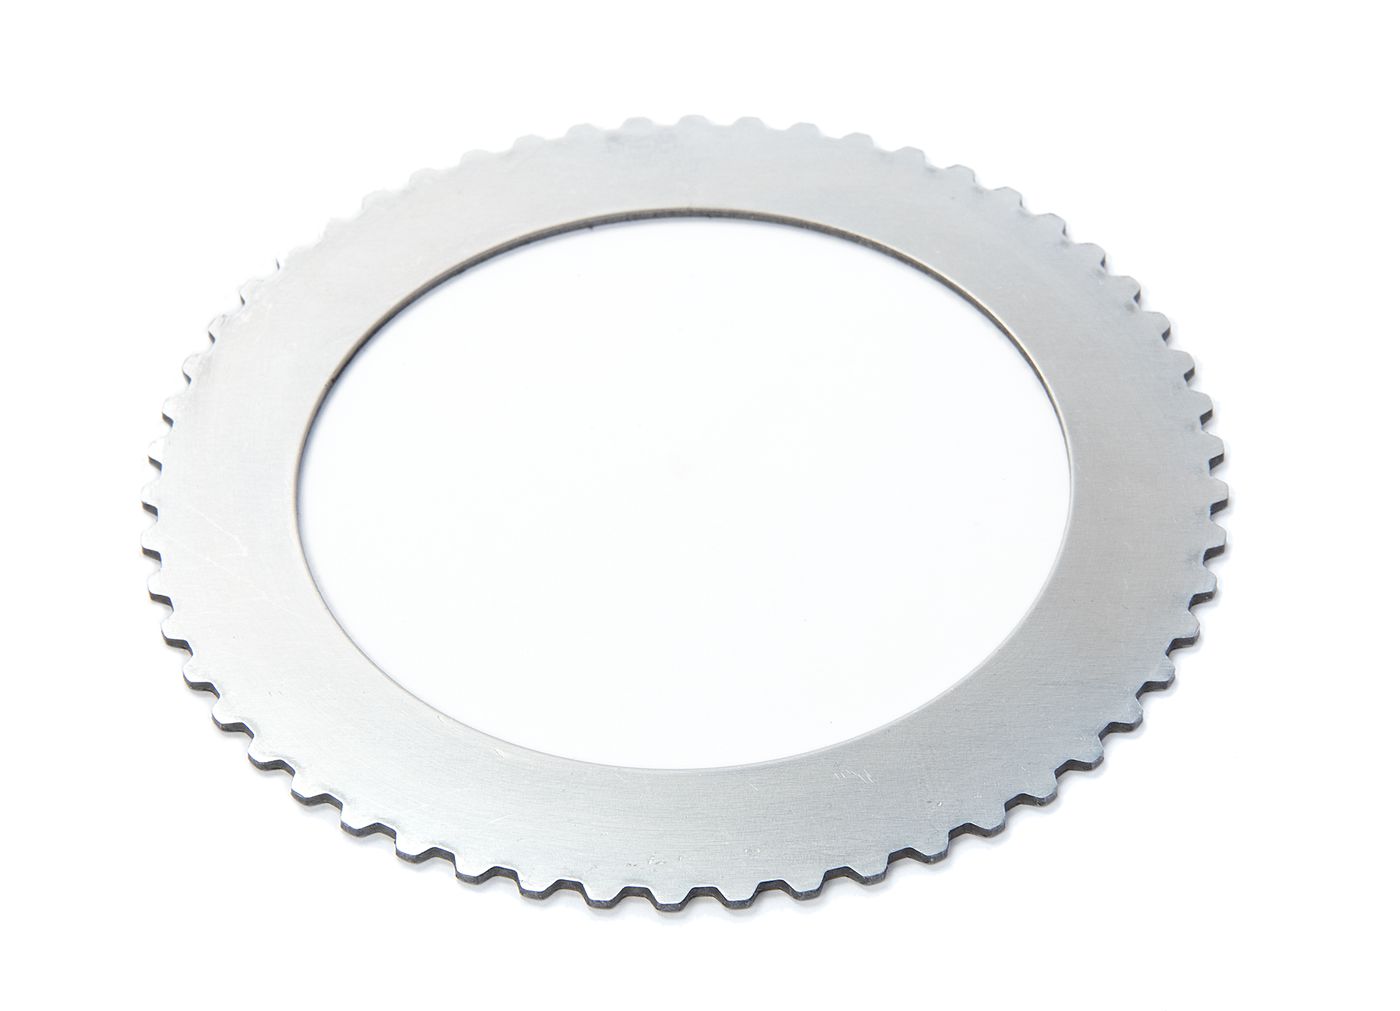 Kupplungsscheibe
Clutch plate
Disque d'embrayage
Tarcza sprzęg